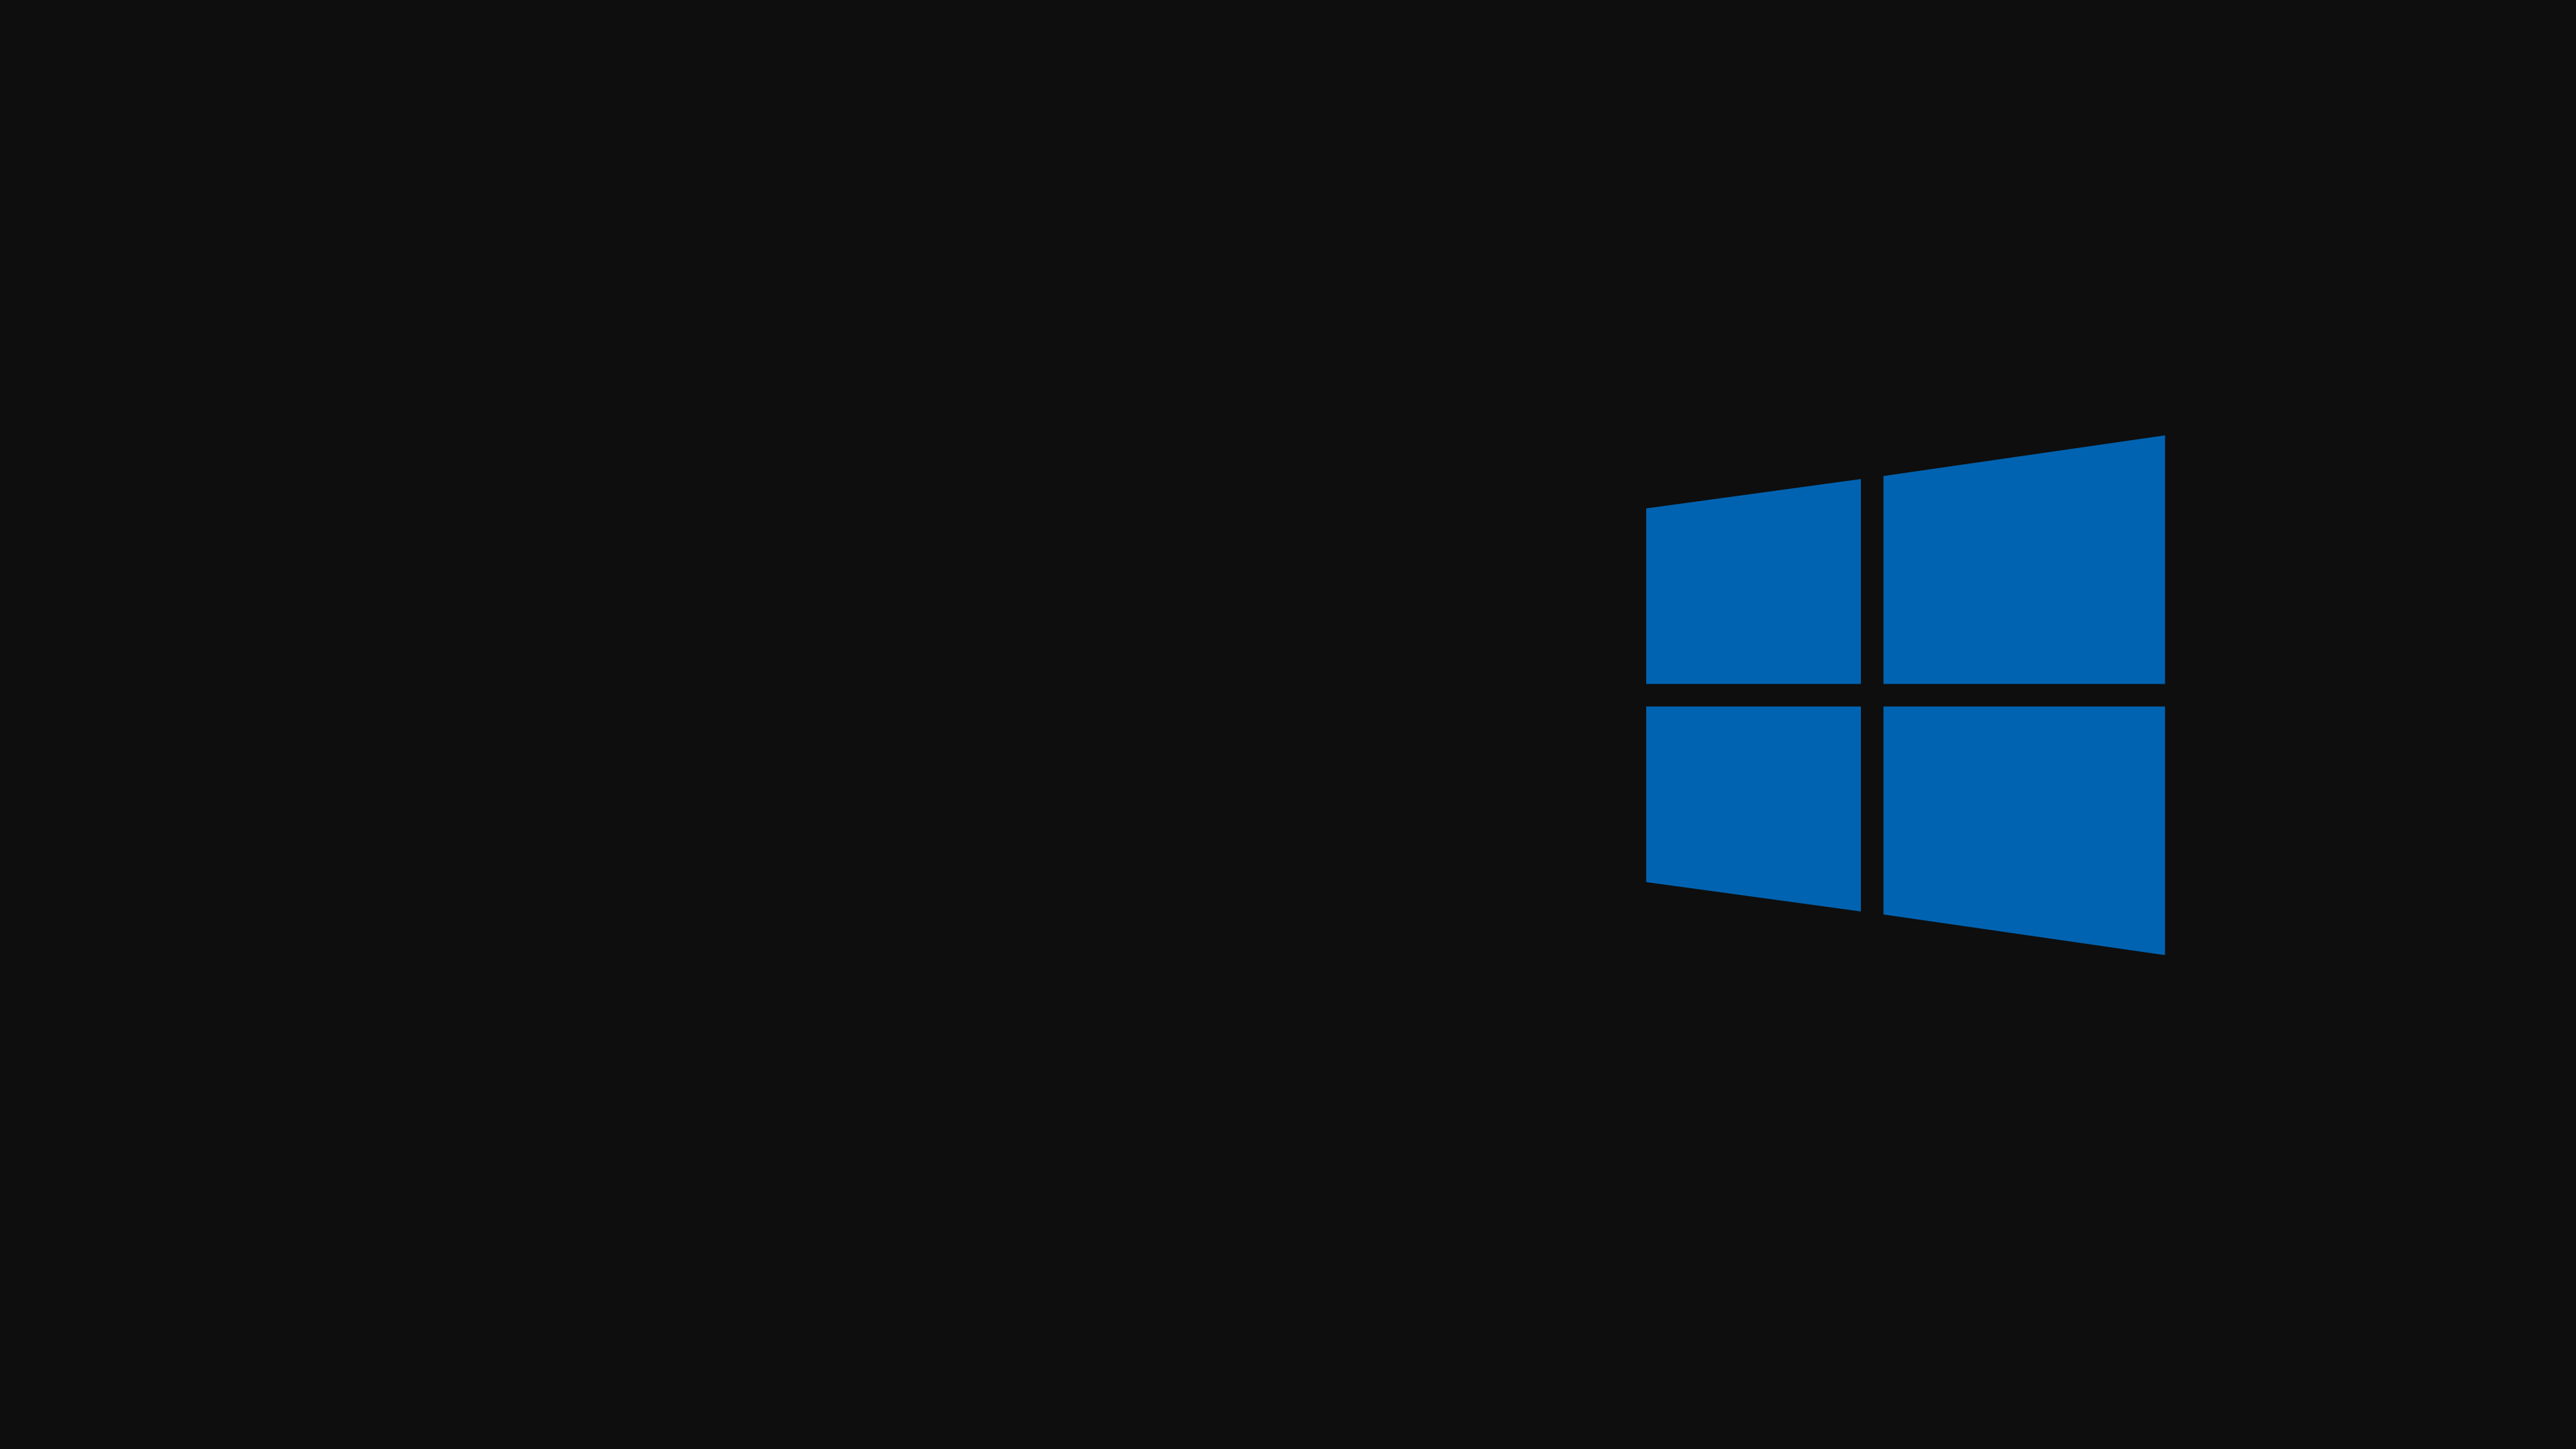 Windows 10 Dark Modern 4k Wallpaper @marnisotto